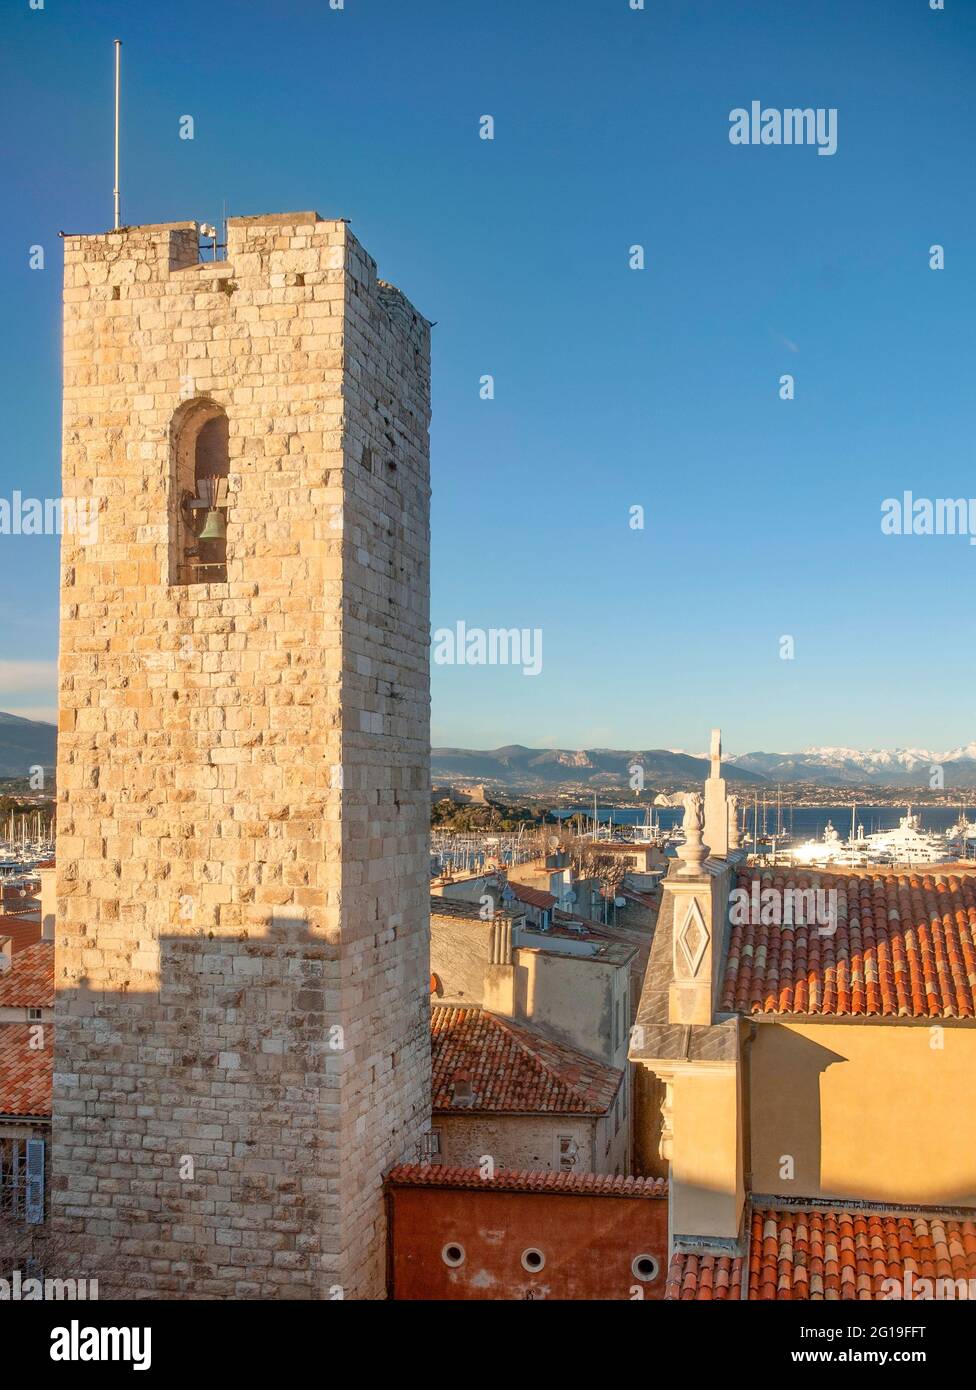 La tour de l'ancien château Grimaldi d'Antibes, où se trouve un musée Picasso renommé. Banque D'Images